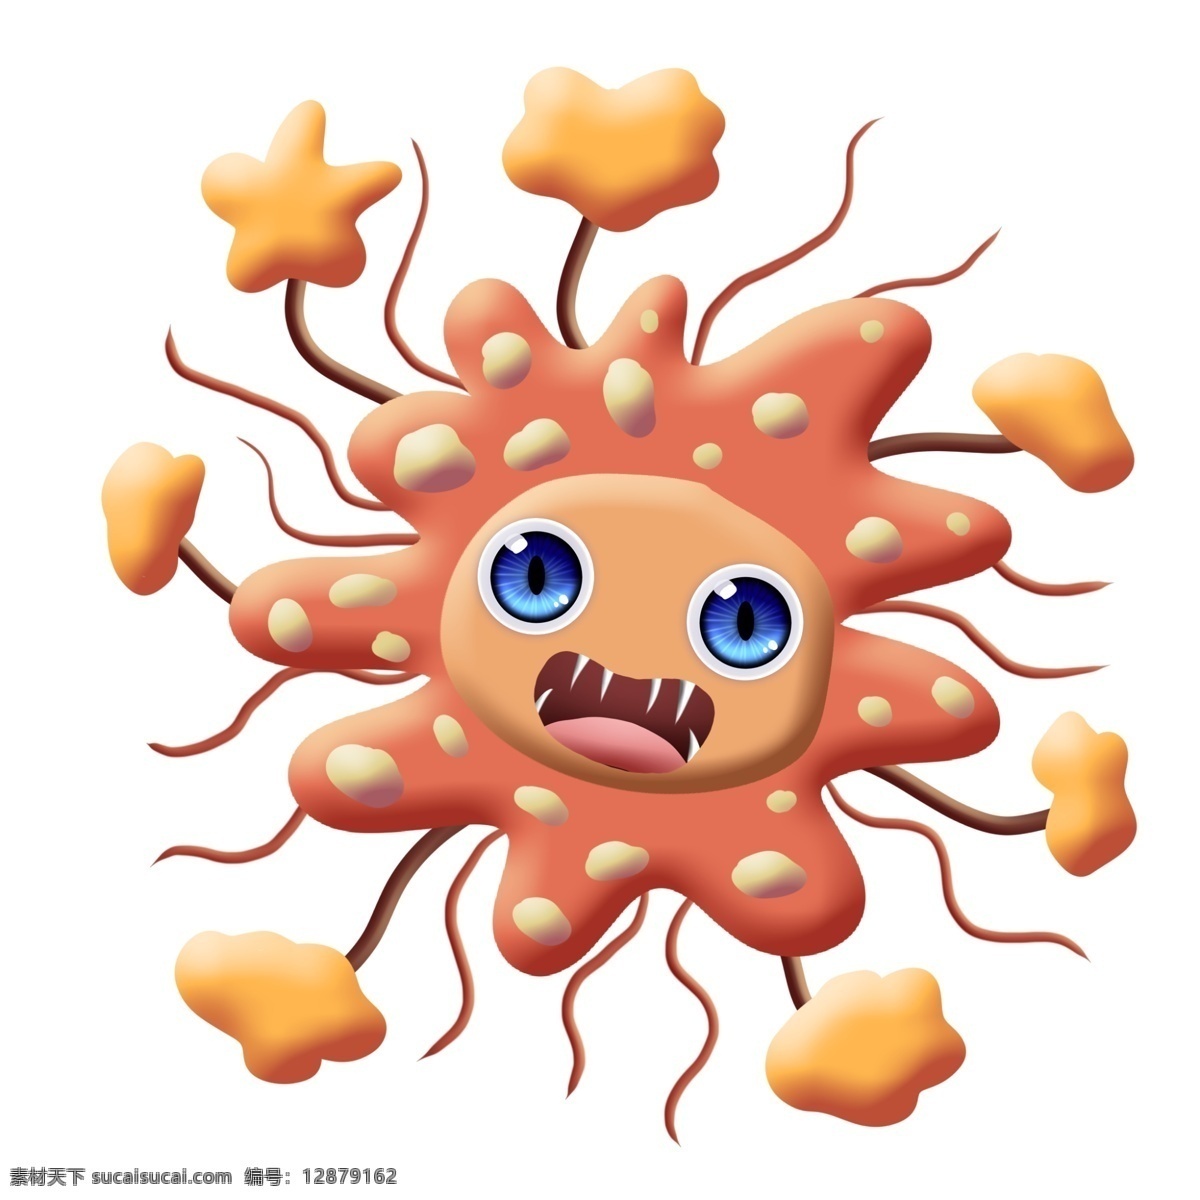 橙色 尖牙 长毛 细菌 卡通 斑点 大眼睛 圆点 串连 杆菌 病毒 医学 生物 疾病 生病 菌体 菌状 细胞